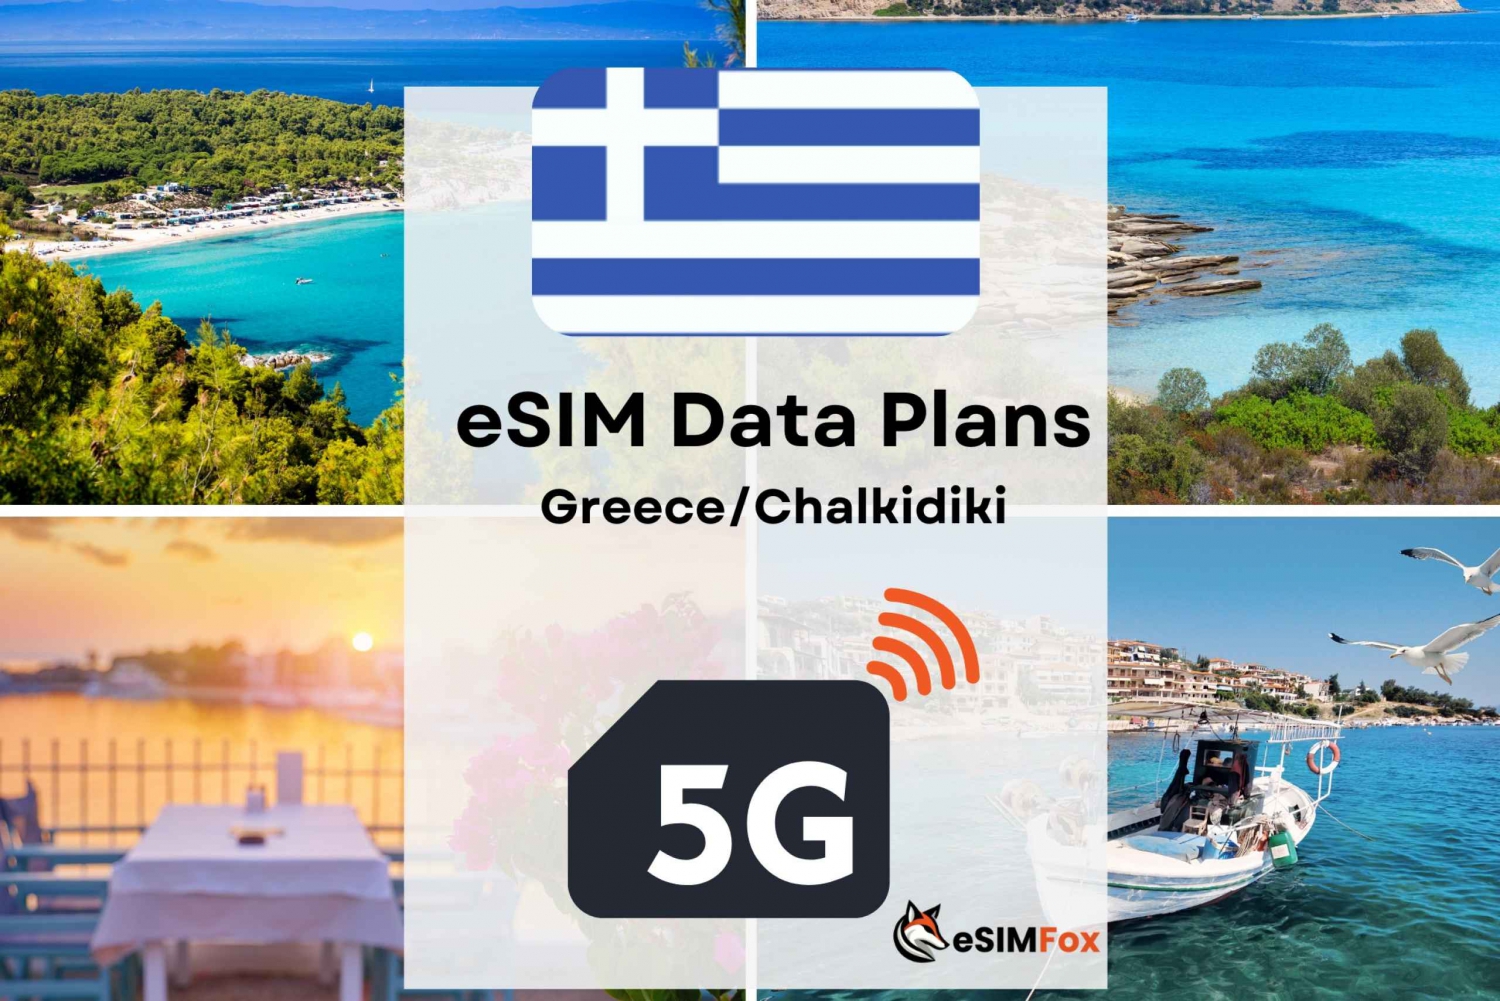 Chalkidiki: Greece/Europe eSIM Internet Data Plan high-speed